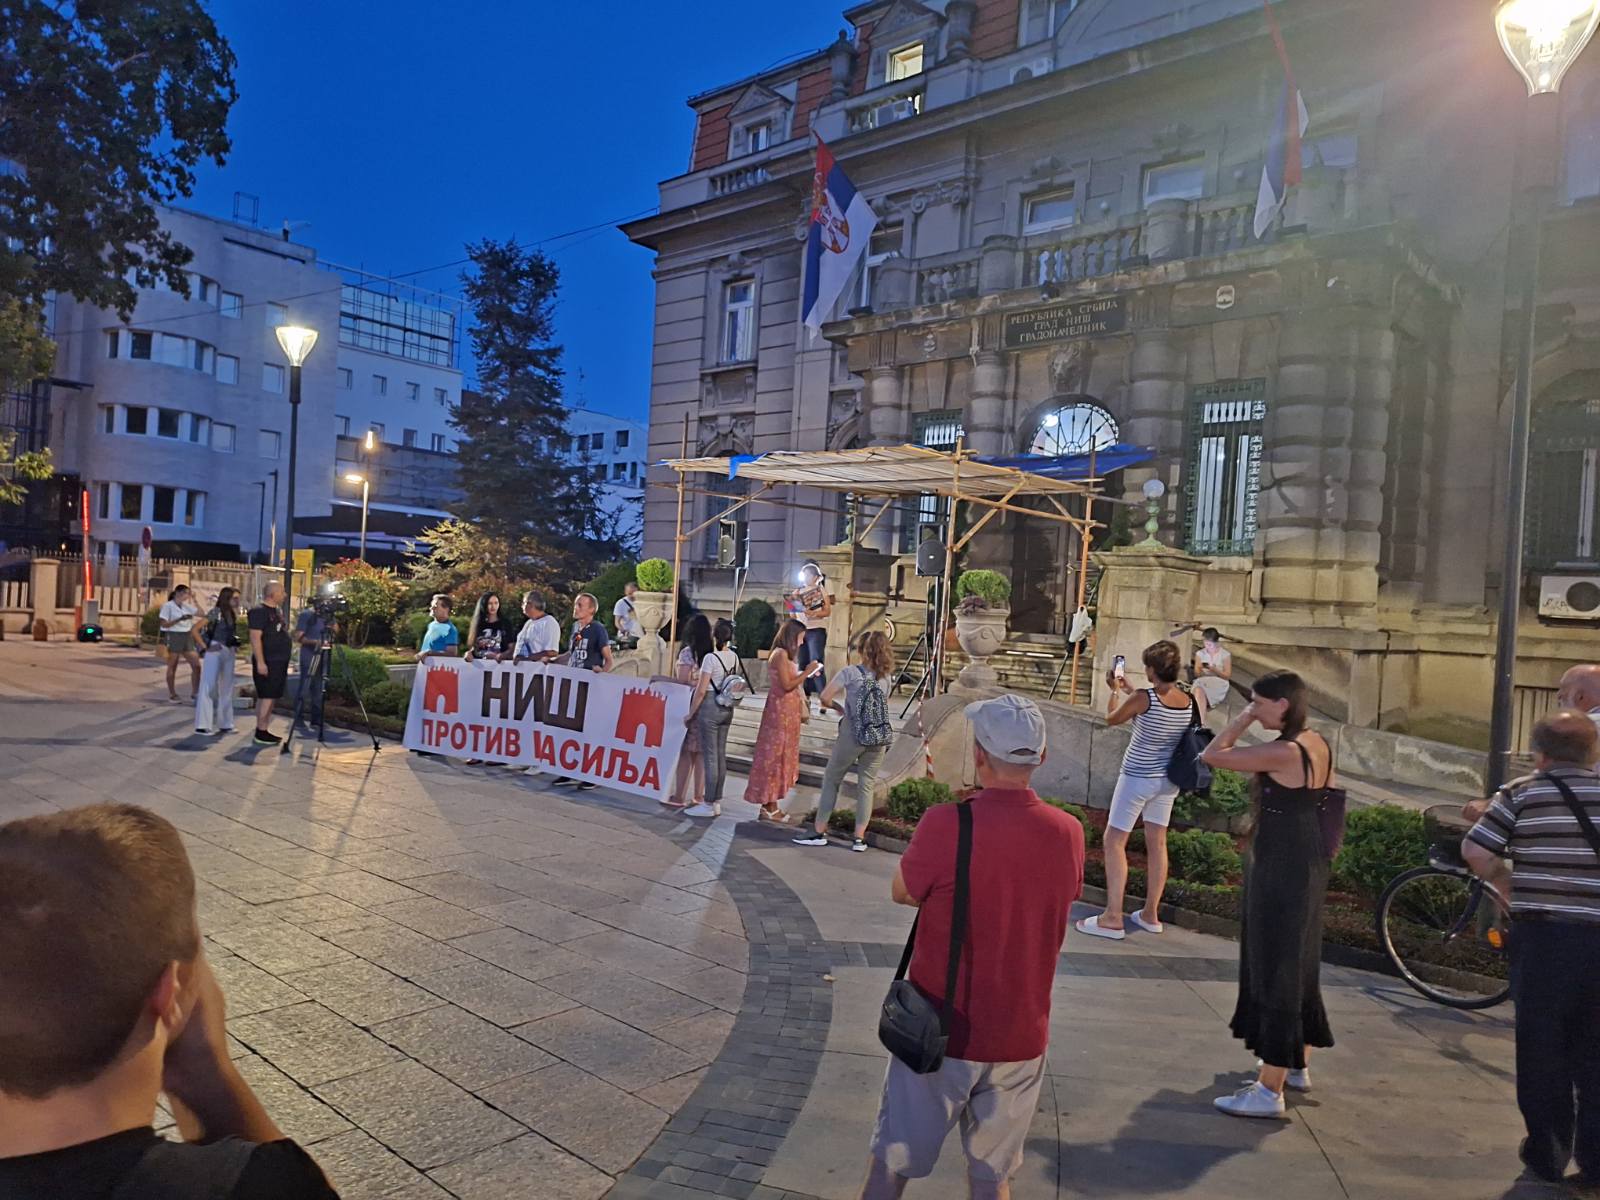 “U novu školsku godinu svi ulazimo sa strahom”: Deseti protest “Srbija protiv nasilja” u Nišu 2